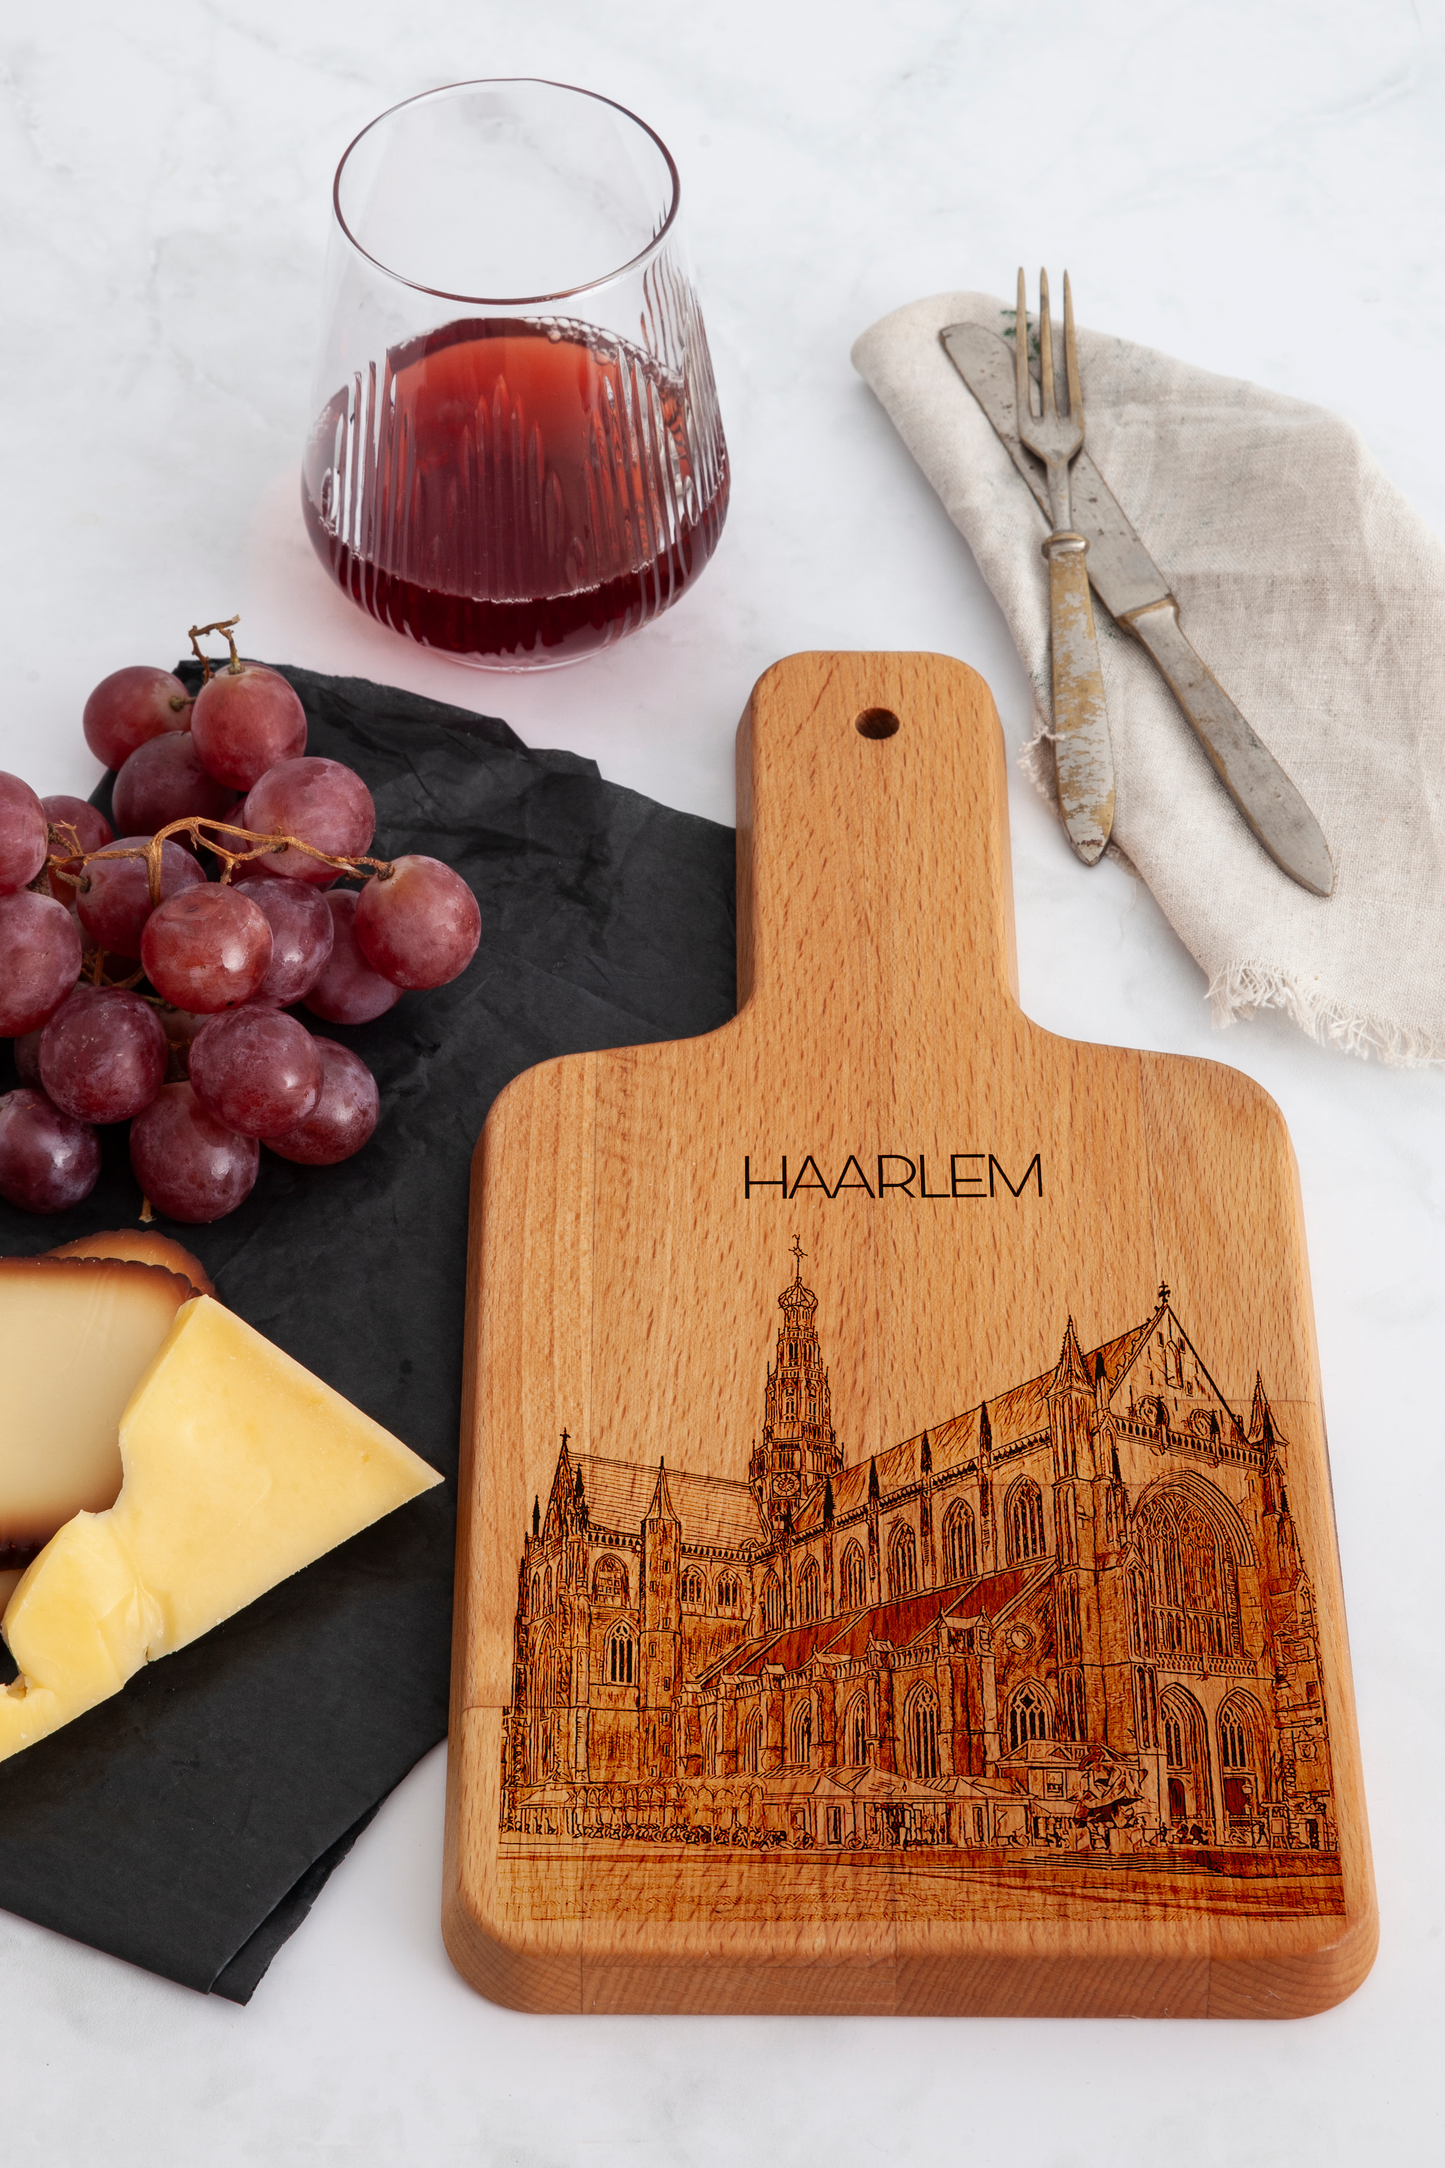 Haarlem, Grote Kerk, cheese board, on countertop